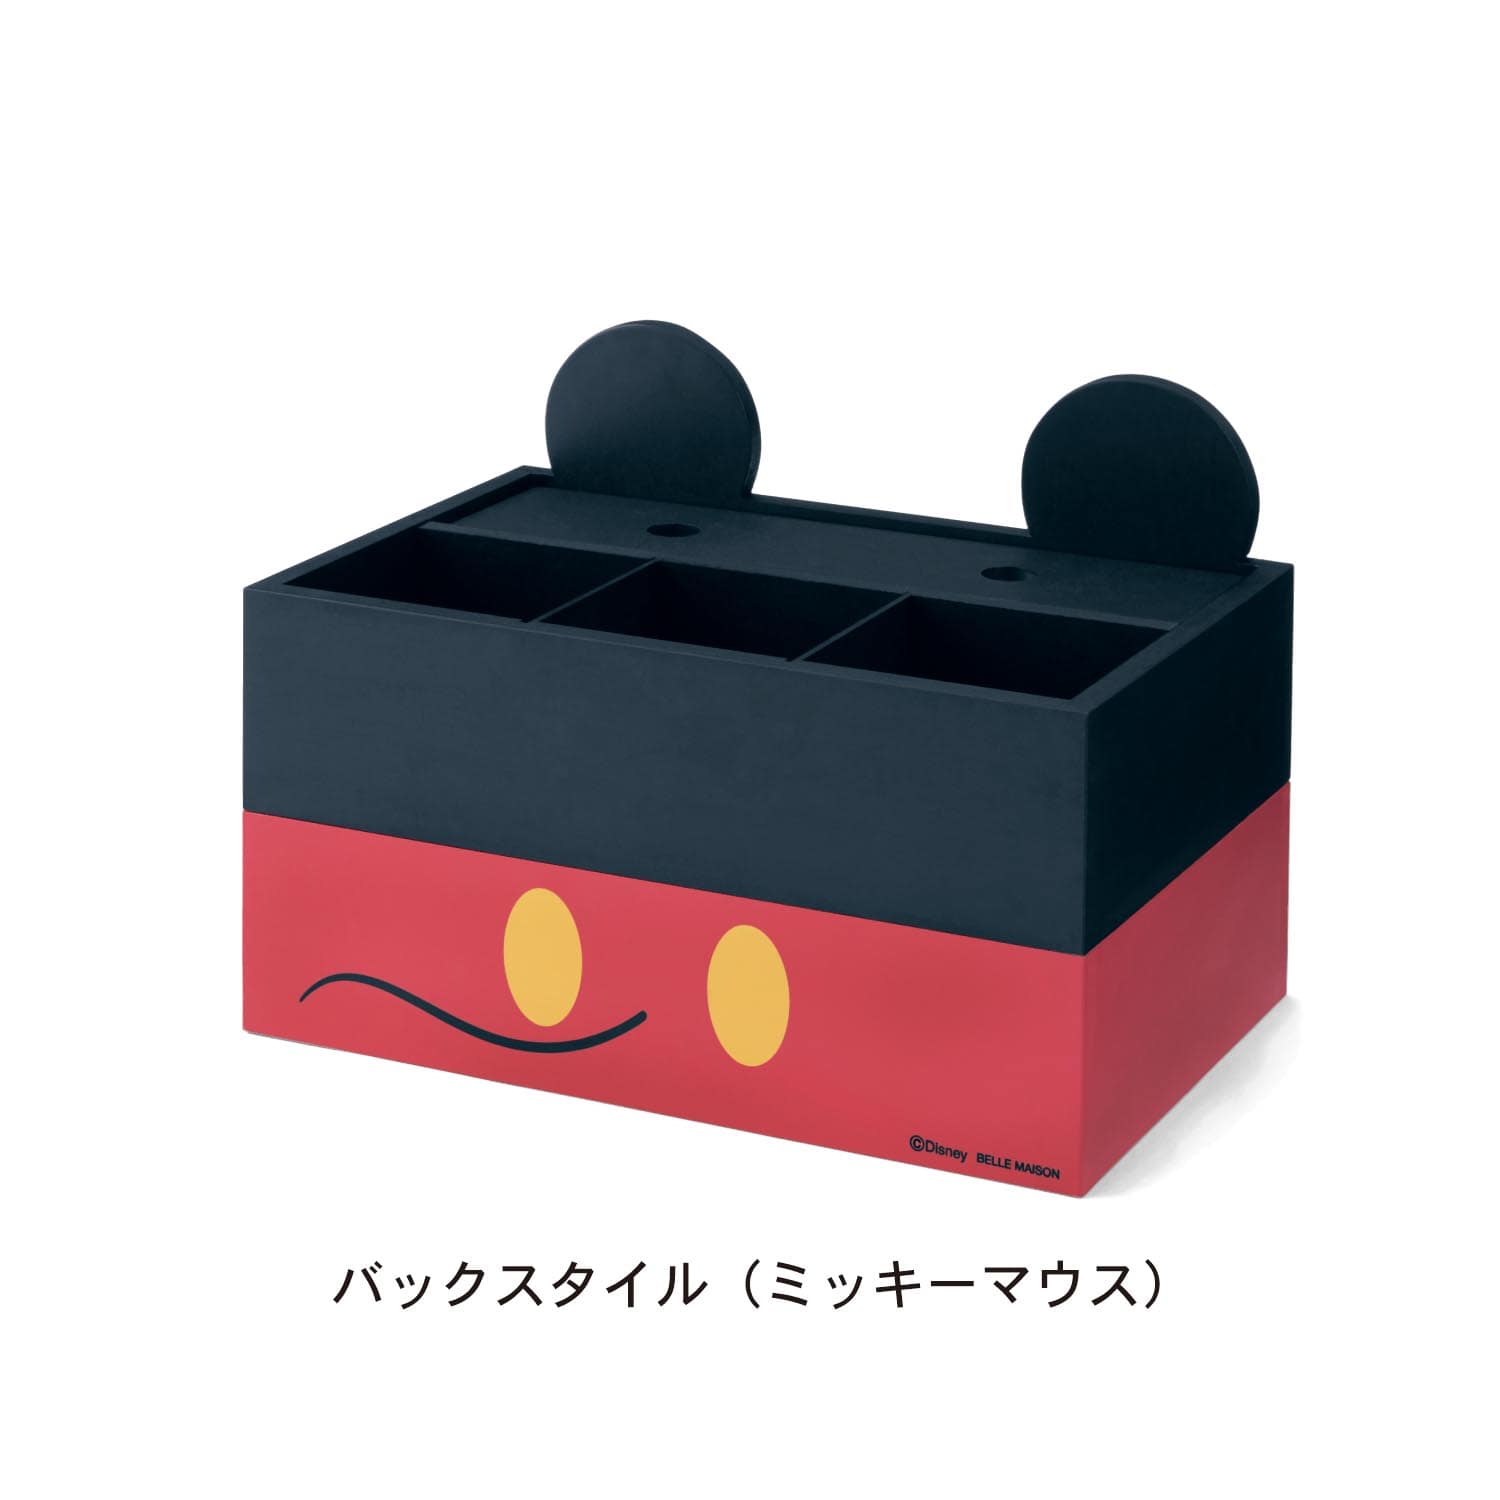 ベルメゾン ディズニー 卓上小物収納ボックス 日本製 選べるキャラクター ミッキーマウス ミッキーマウス ベルメゾン Jre Mall店 Jre Mall